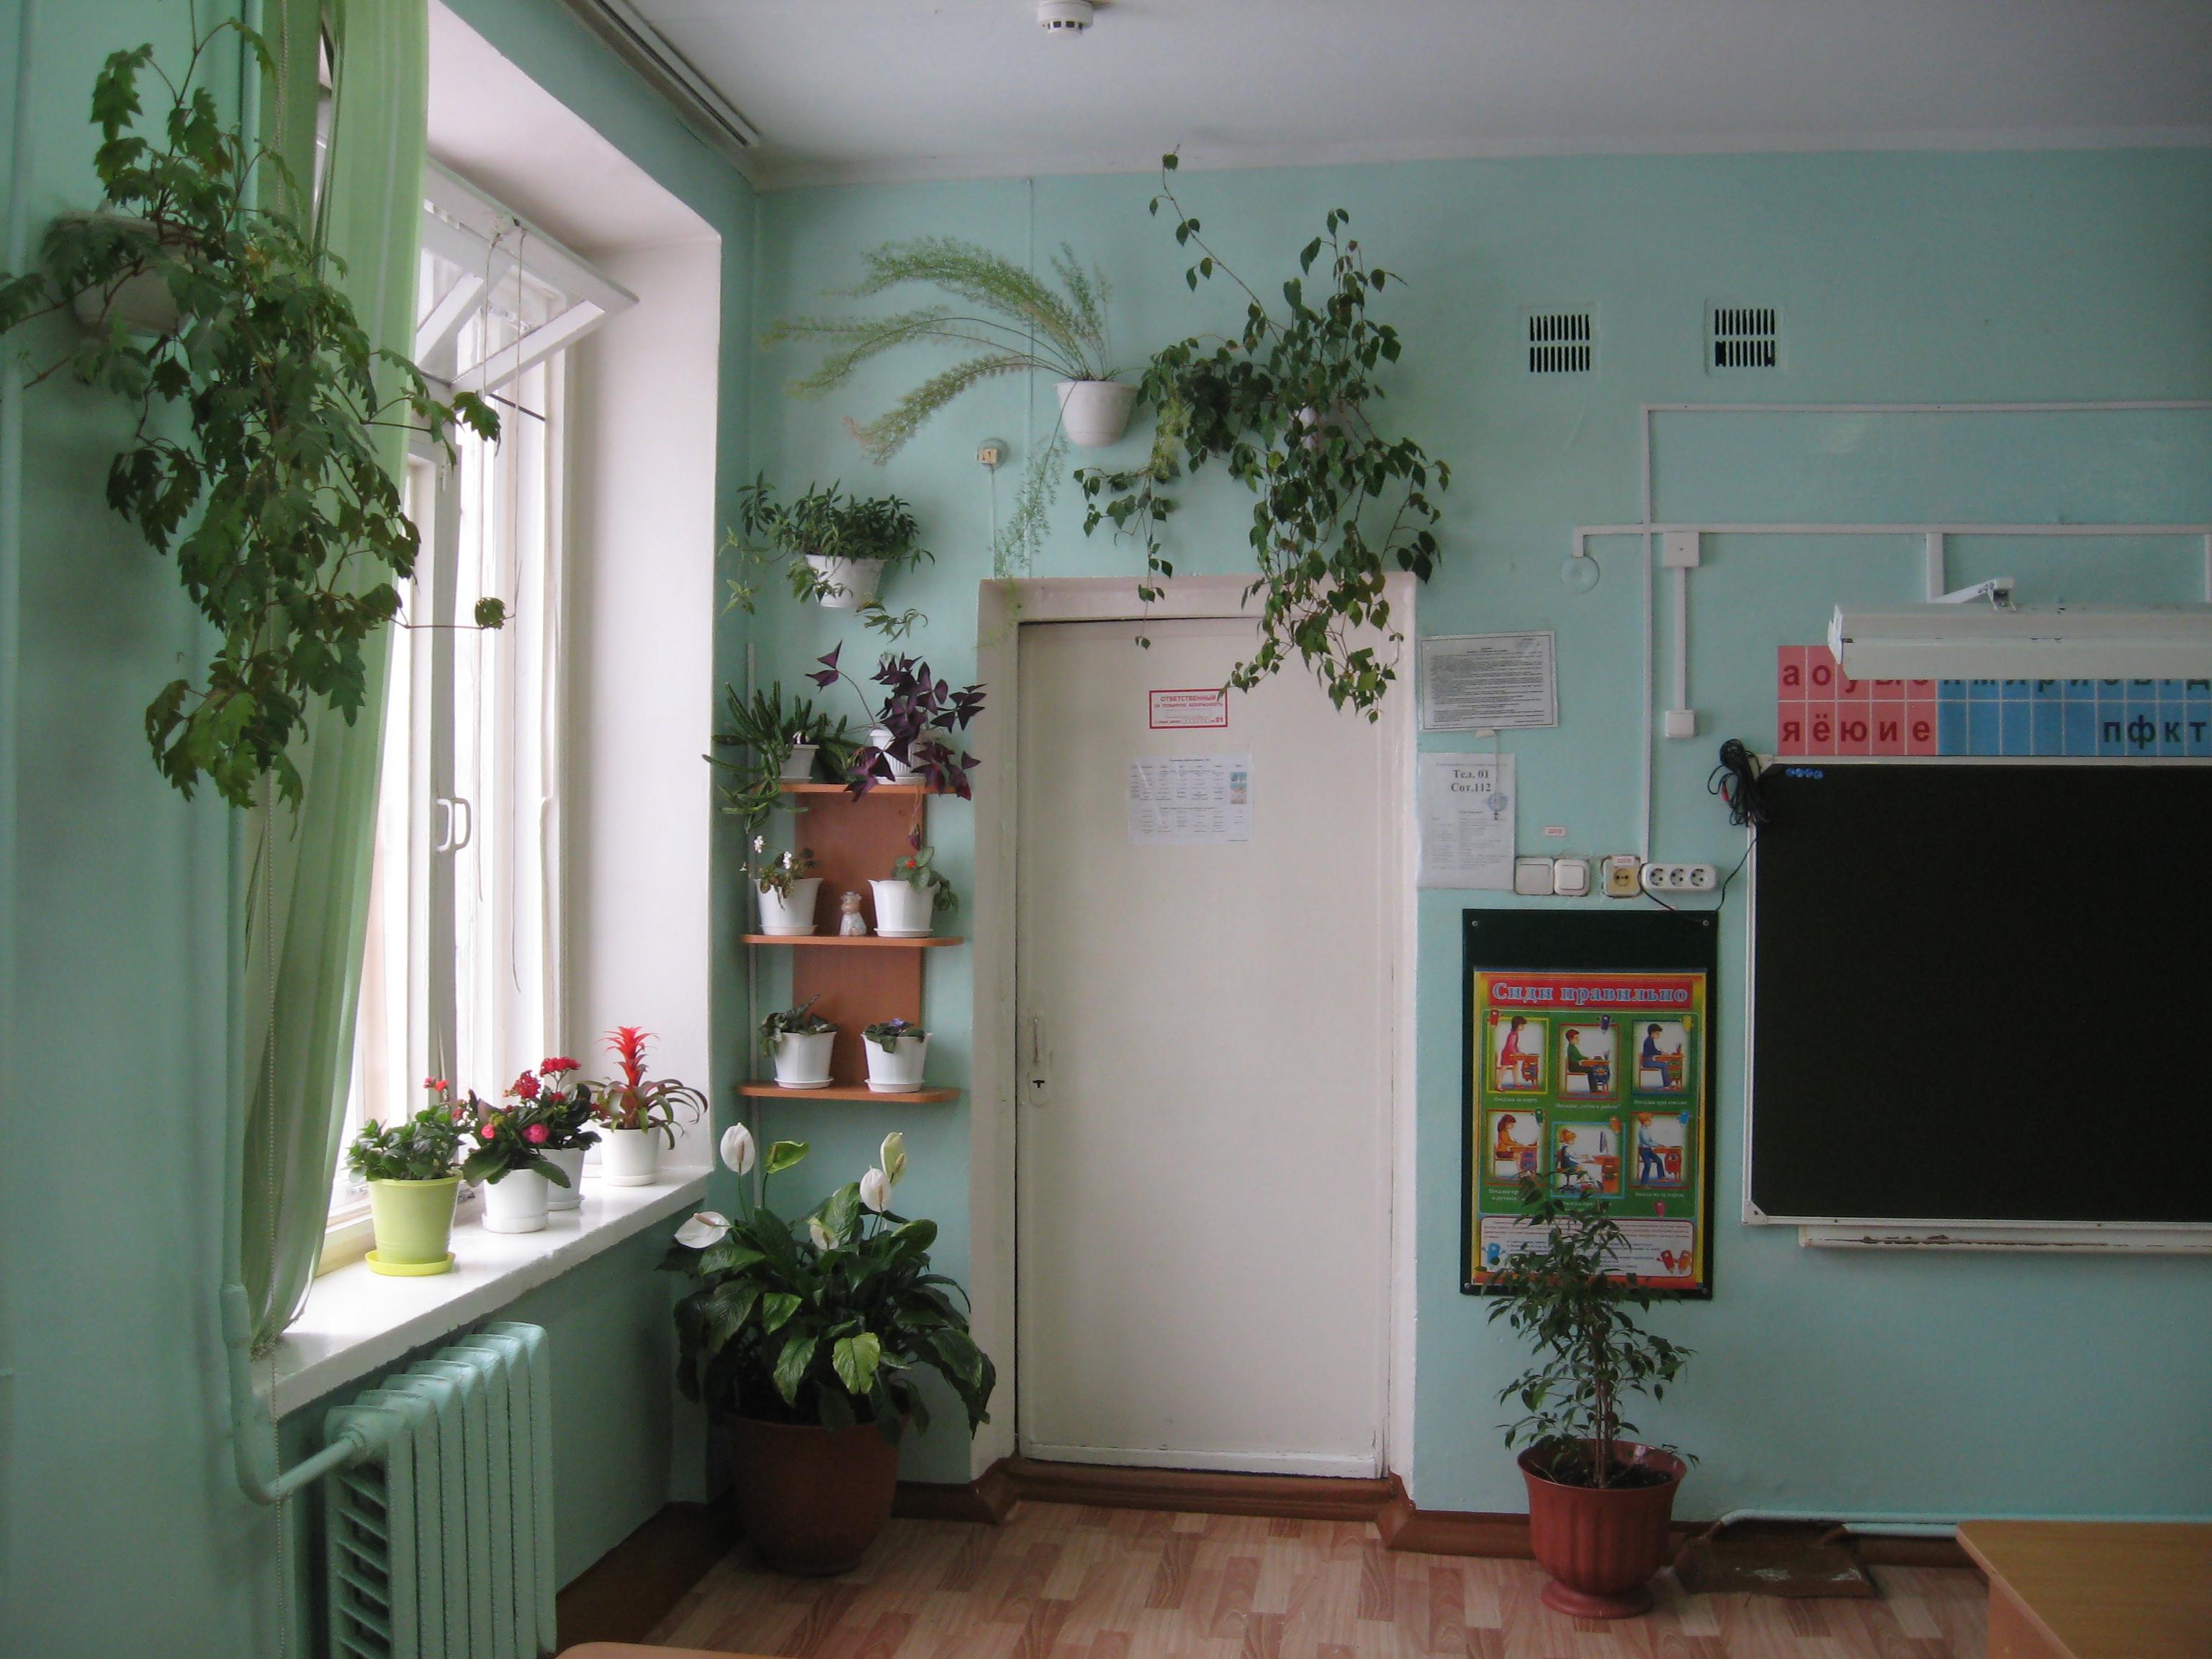 Живой уголок в классе. Зеленый уголок в классе. Зеленая зона в кабинете. Растения в кабинете начальной школы. Комнатные растения в кабинетах школы.